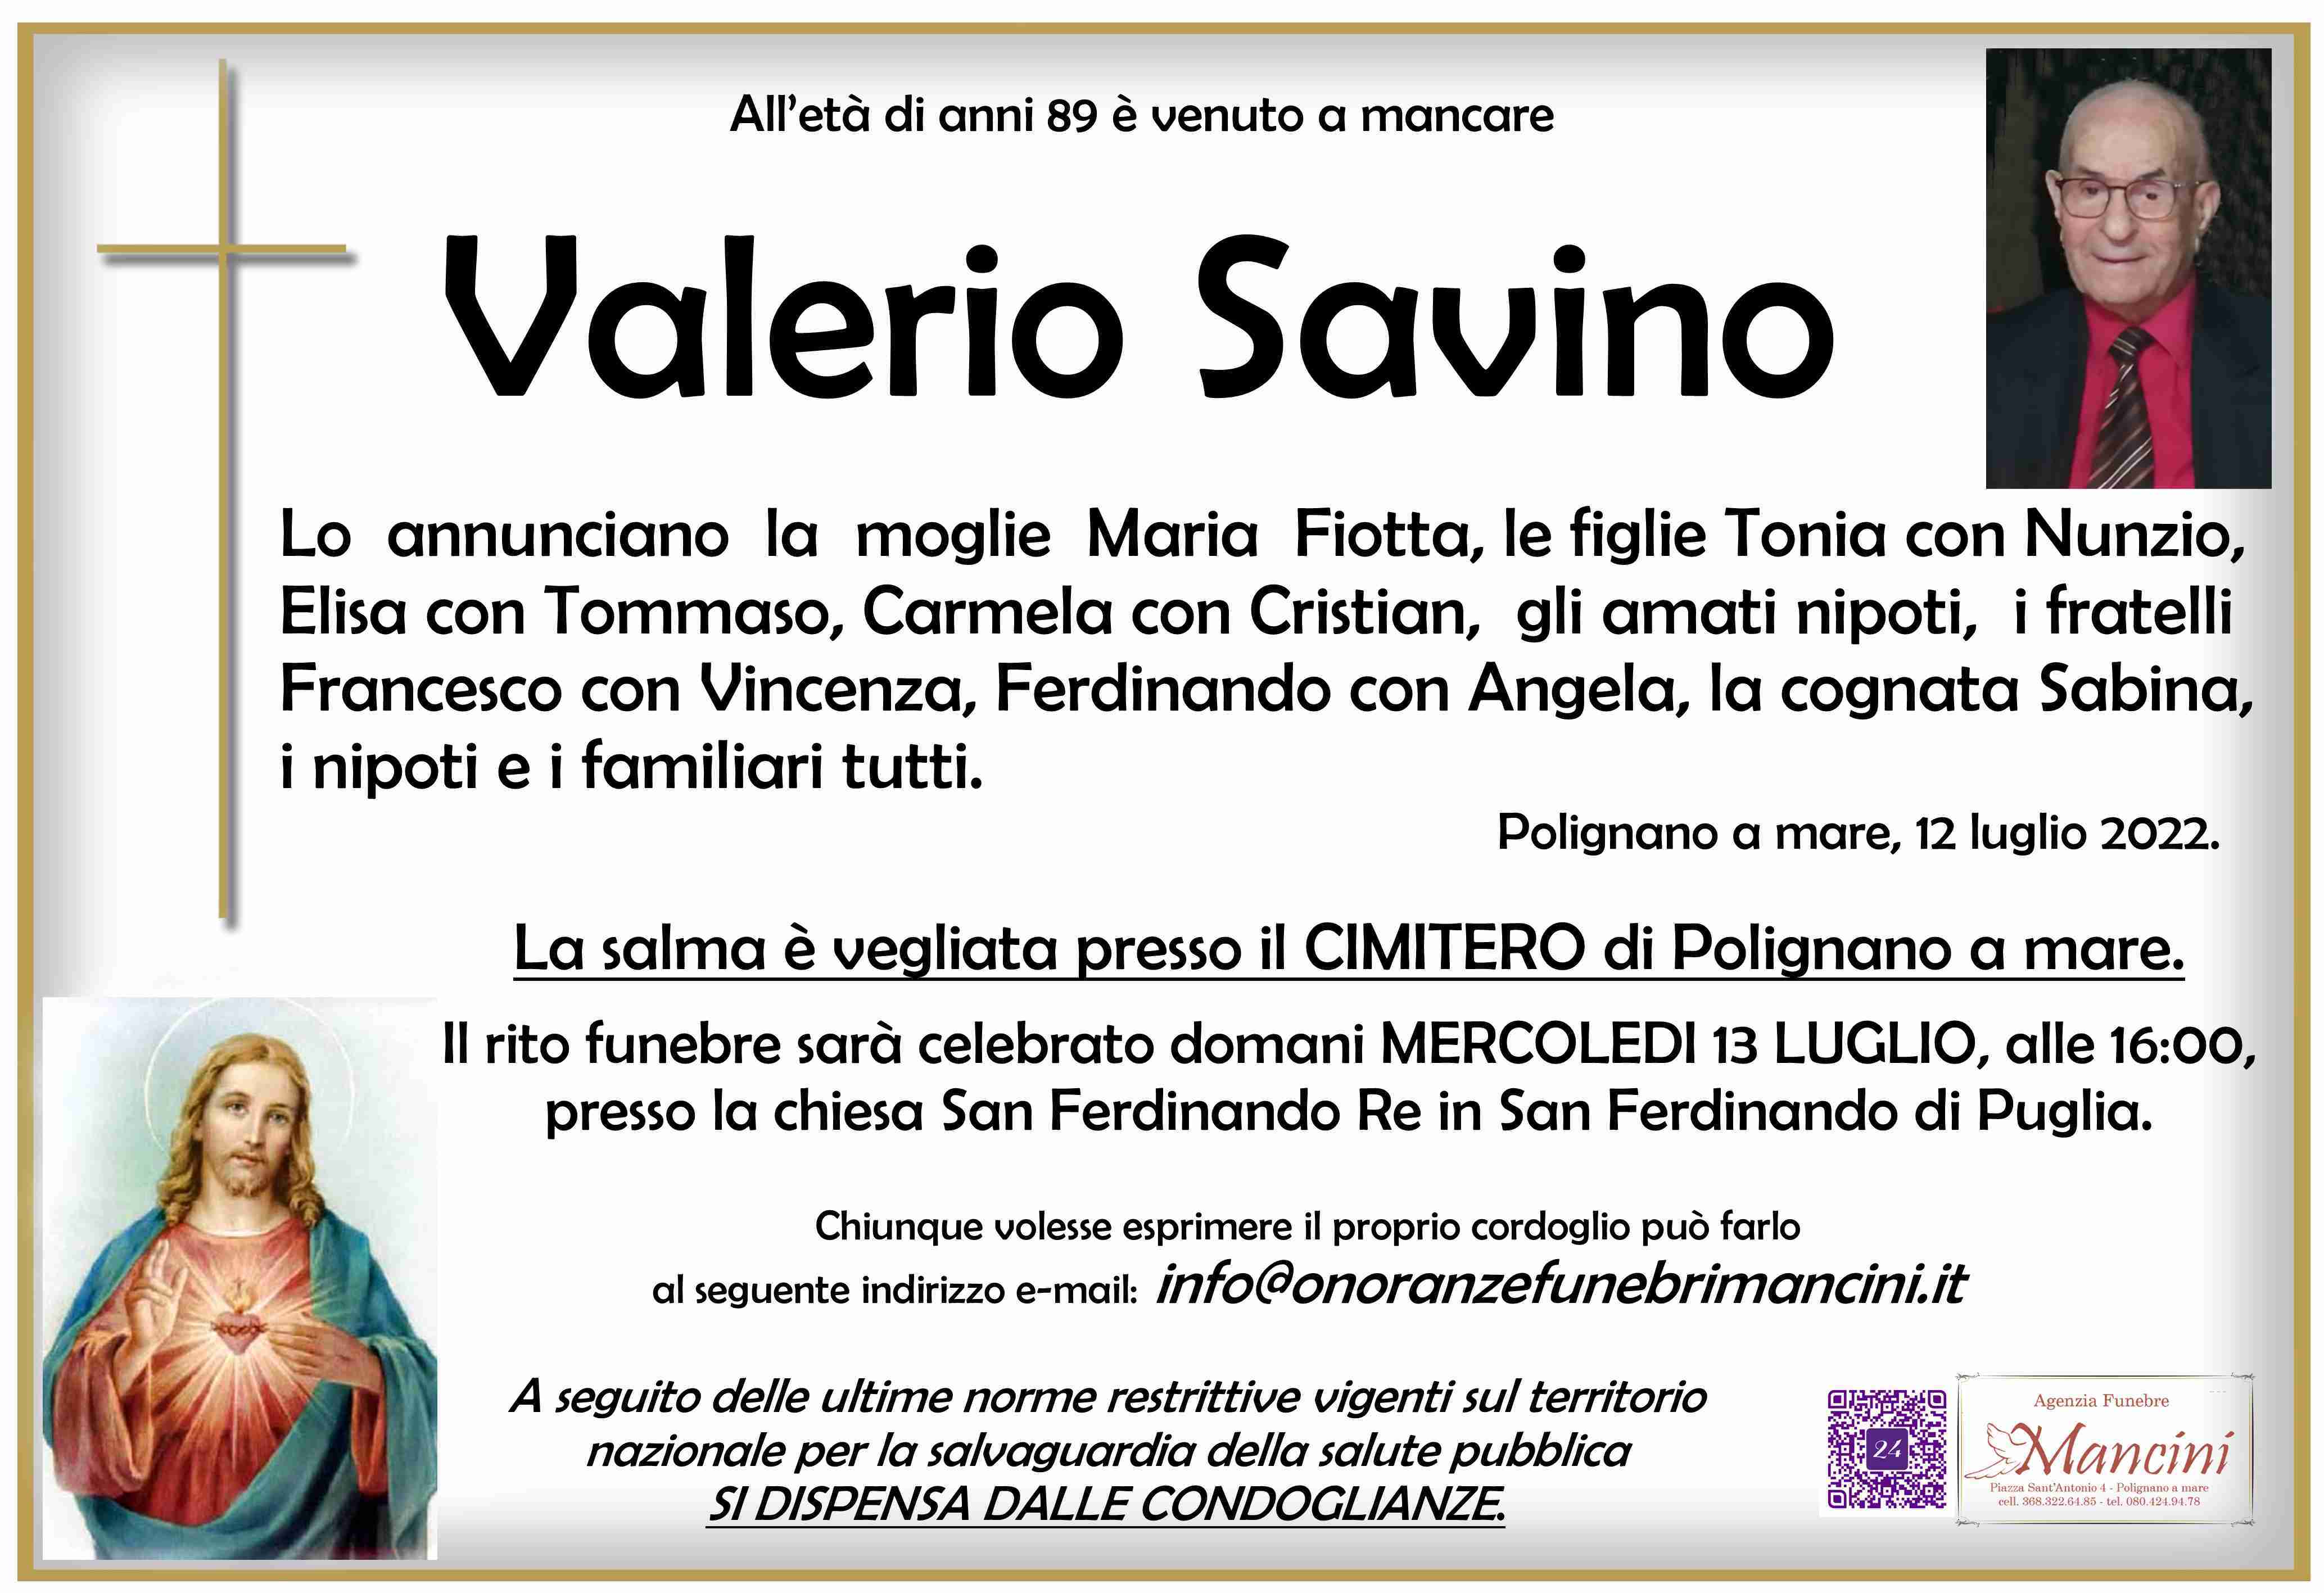 Savino Valerio